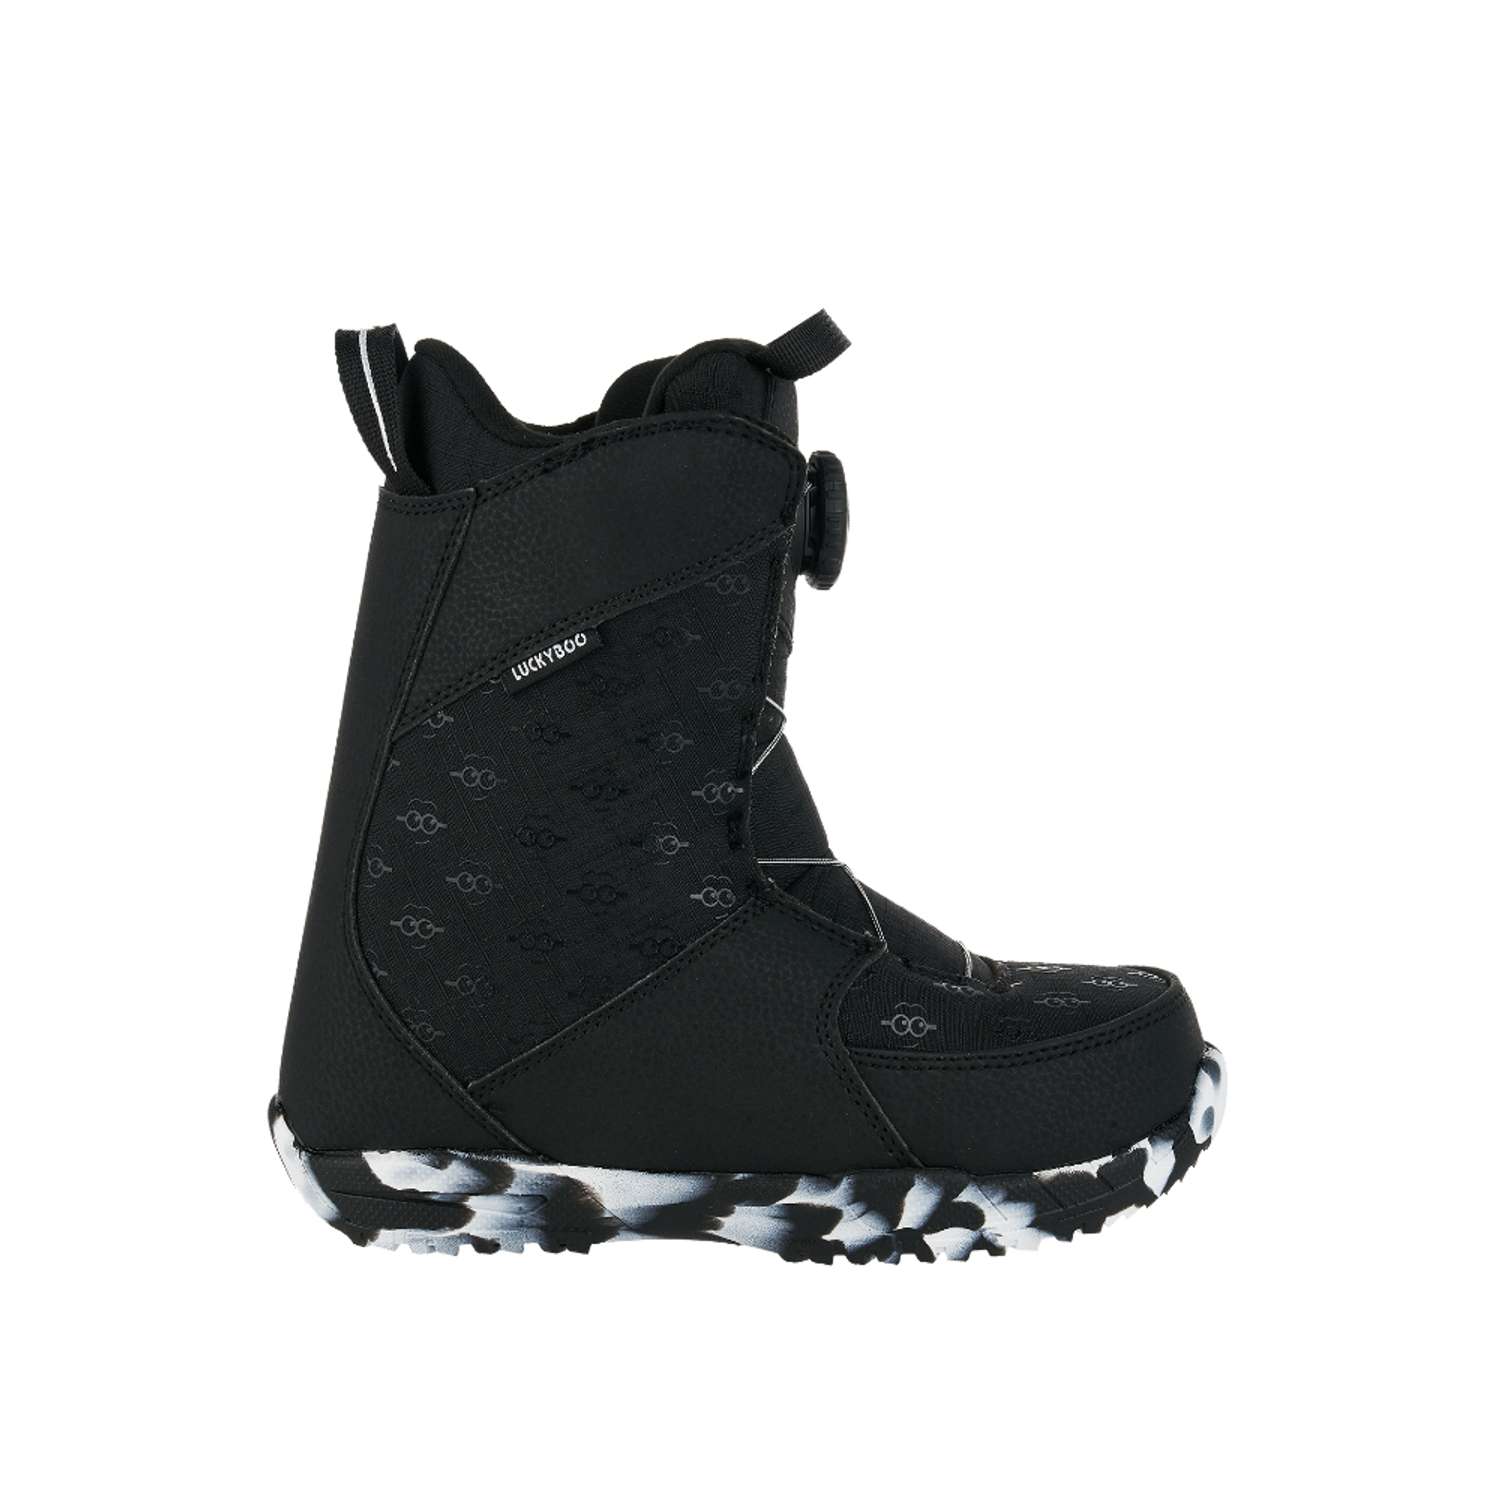 Ботинки для сноуборда Fastec Luckyboo 20cm - фото 2